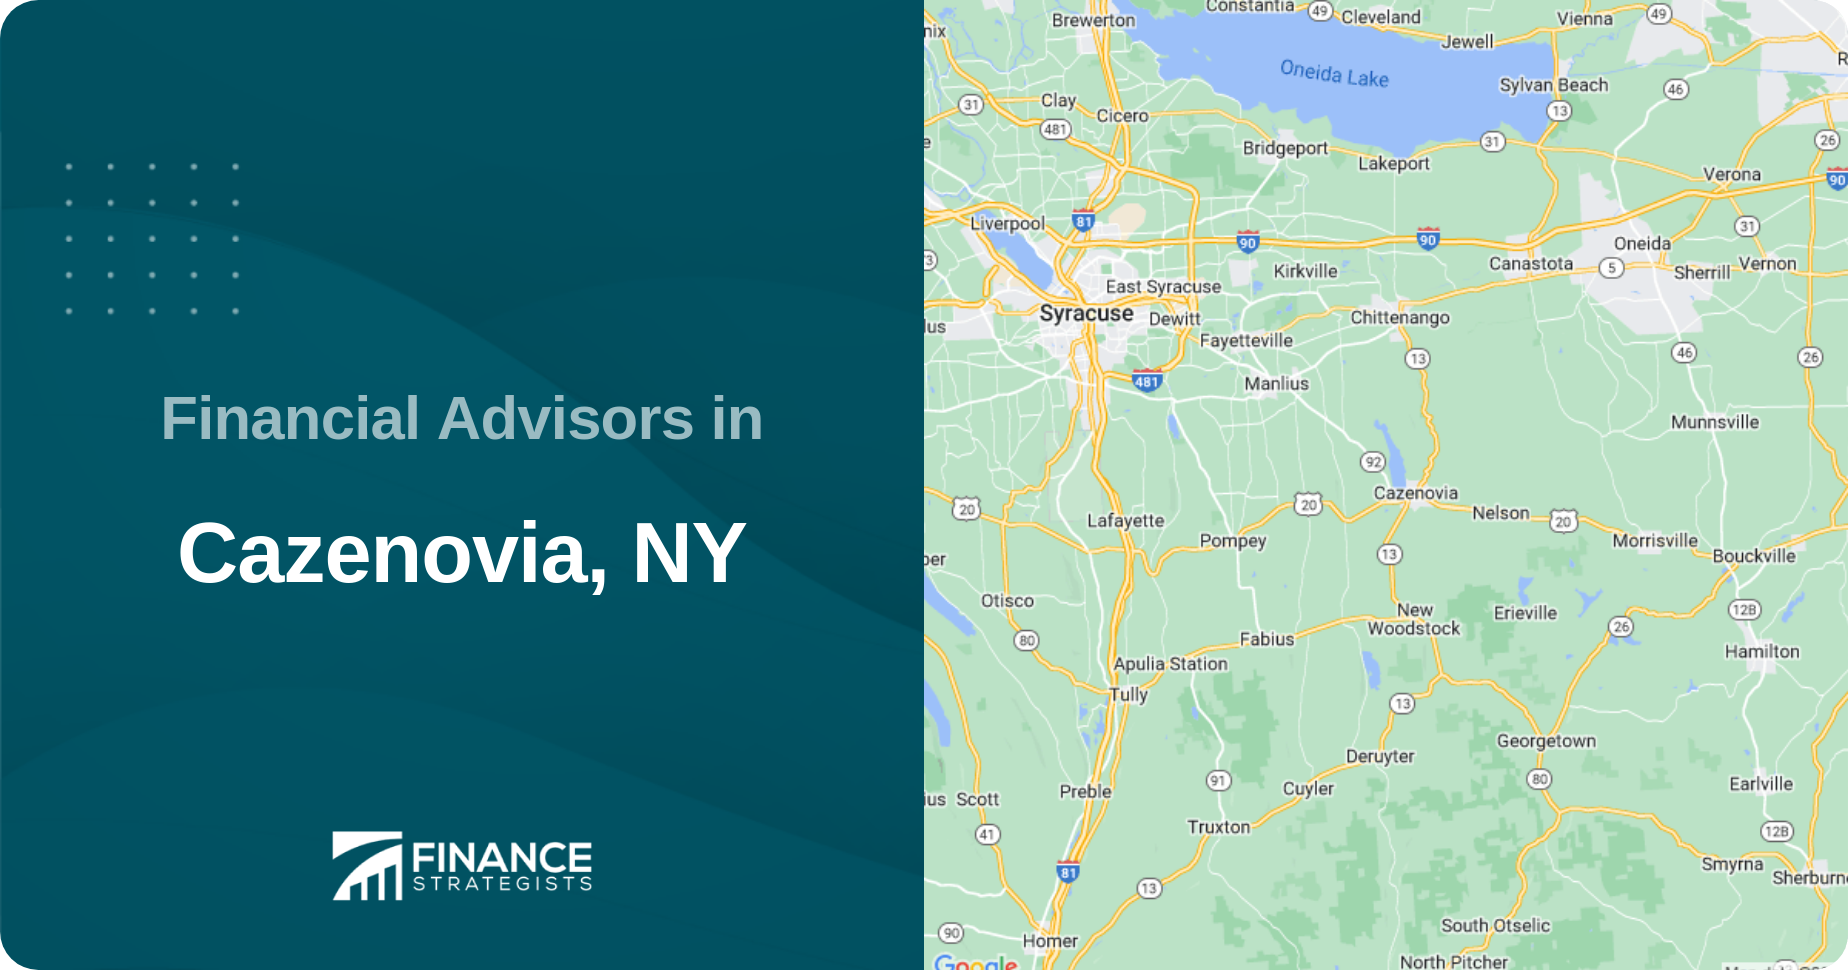 Financial Advisors in Cazenovia, NY